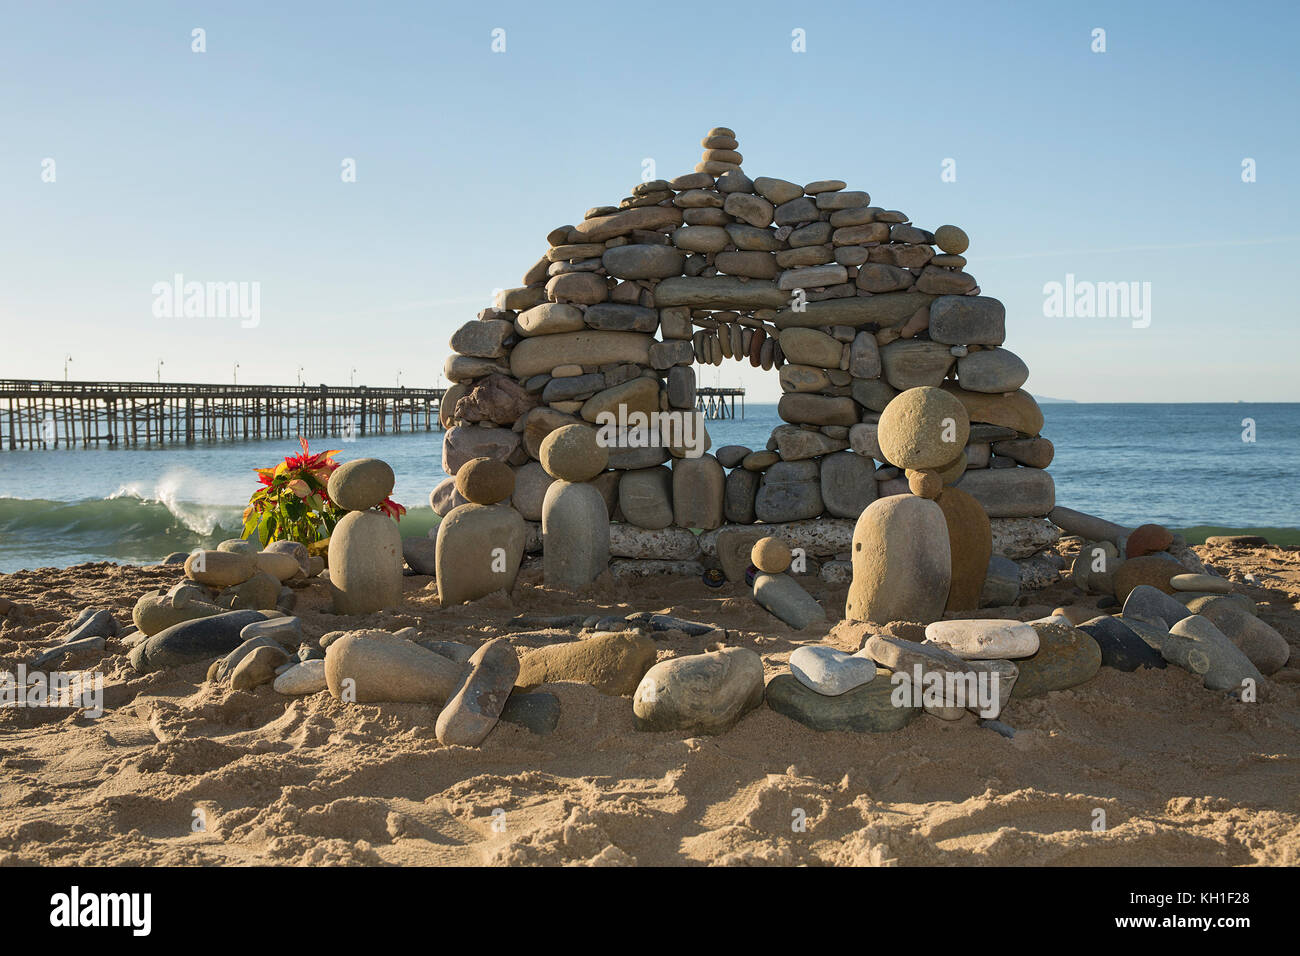 Stone nativity at the beach Stock Photo